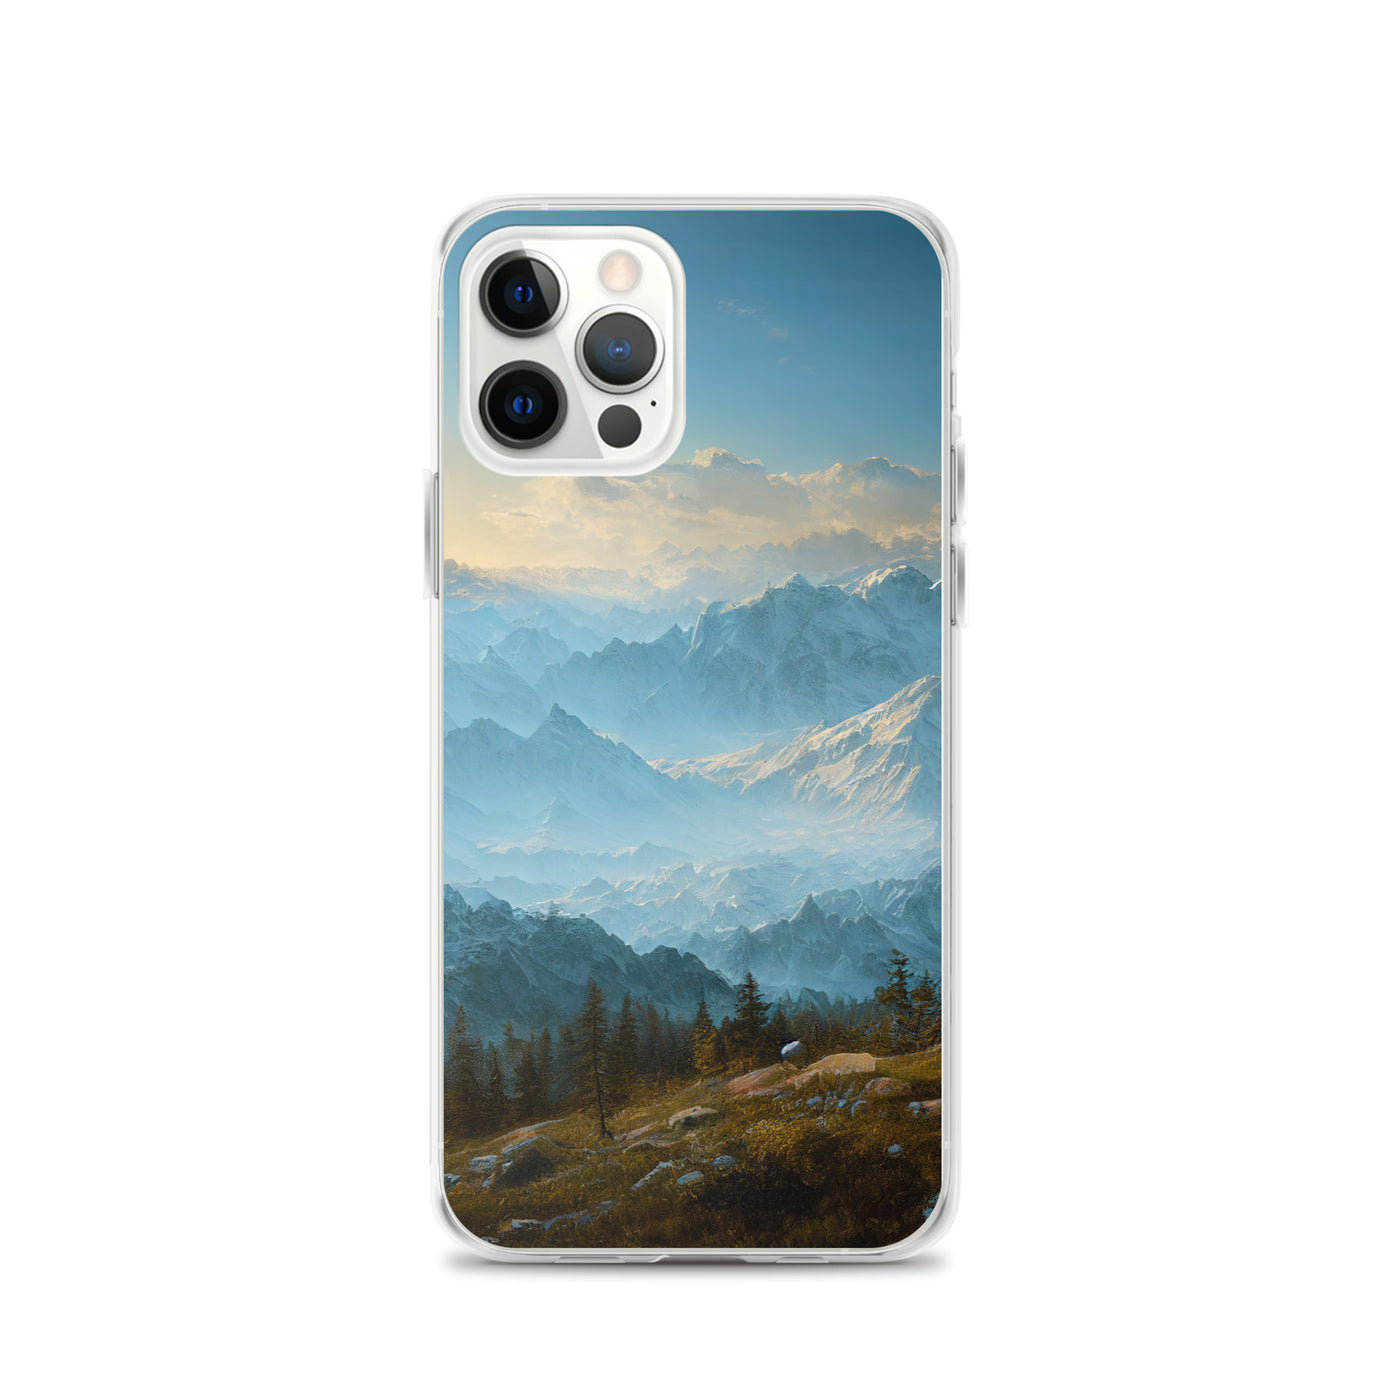 Schöne Berge mit Nebel bedeckt - Ölmalerei - iPhone Schutzhülle (durchsichtig) berge xxx iPhone 12 Pro